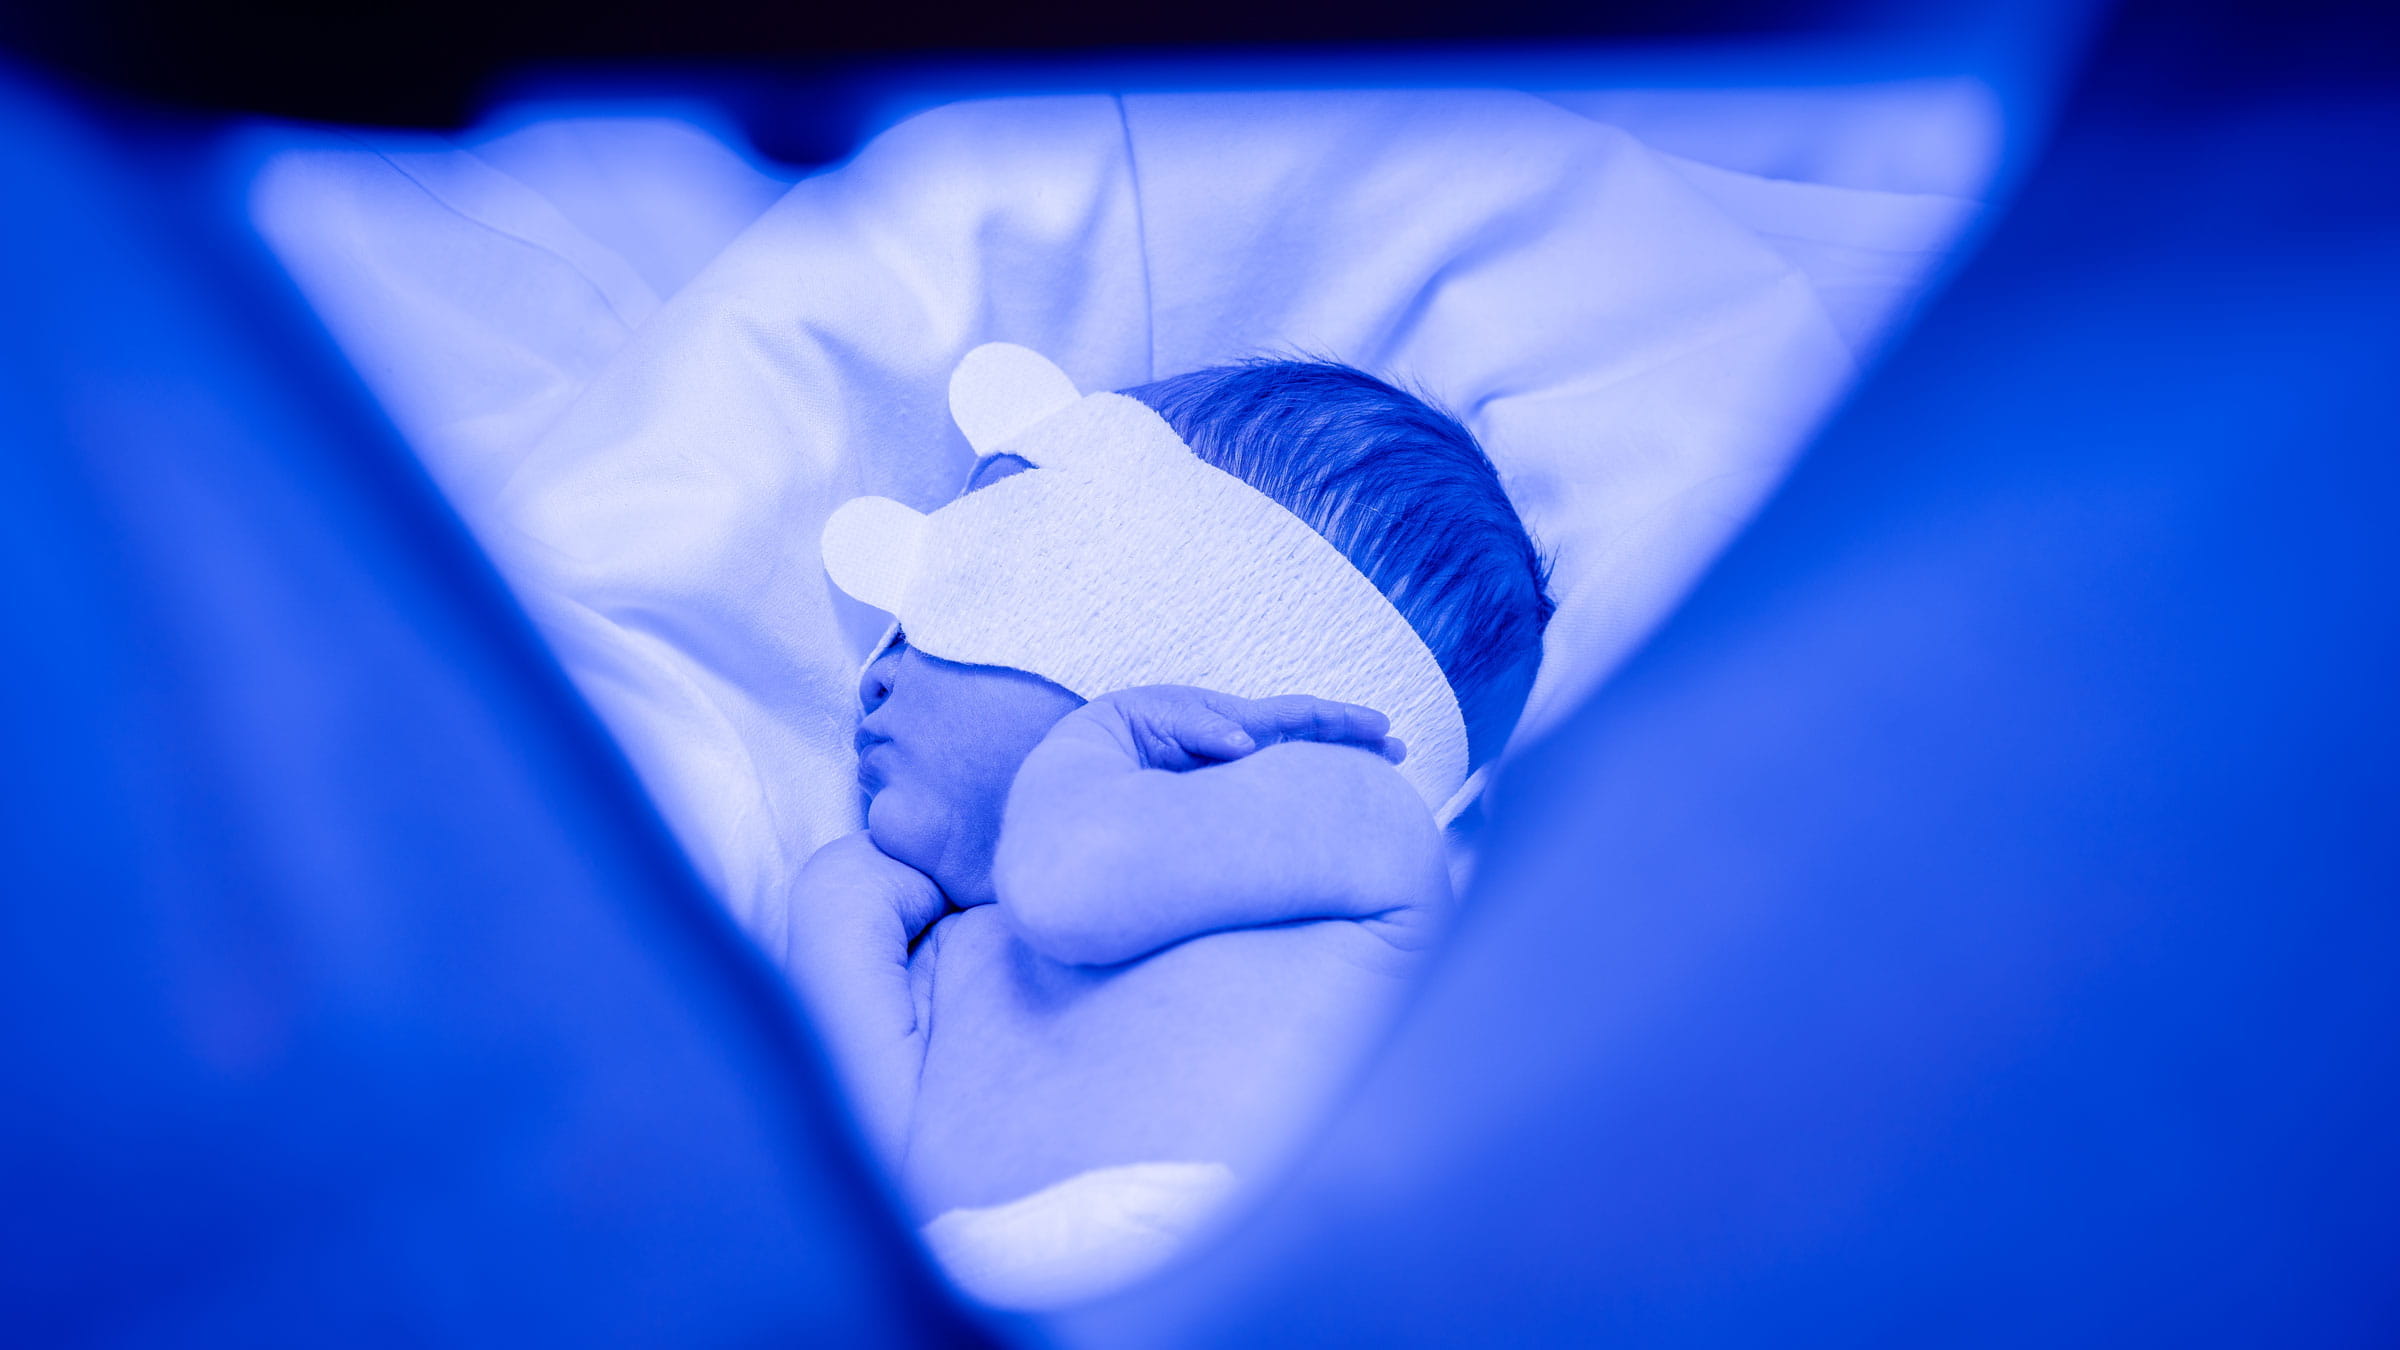 Newborn baby undergoing light therapy for jaundice